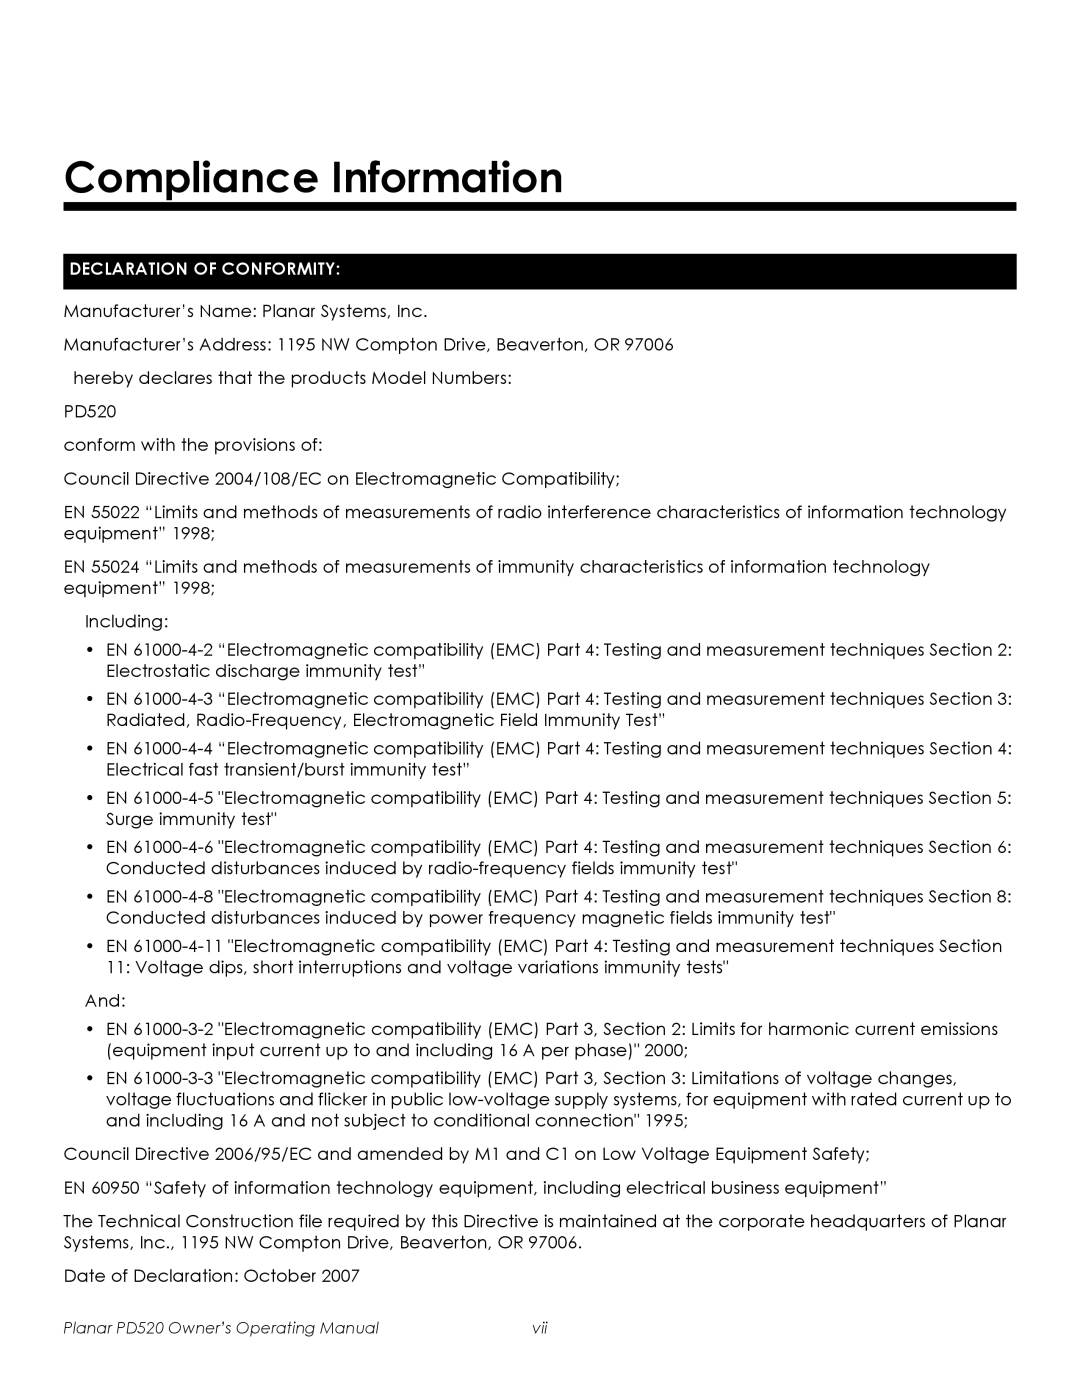 Planar PD520 manual Compliance Information, Declaration Of Conformity 